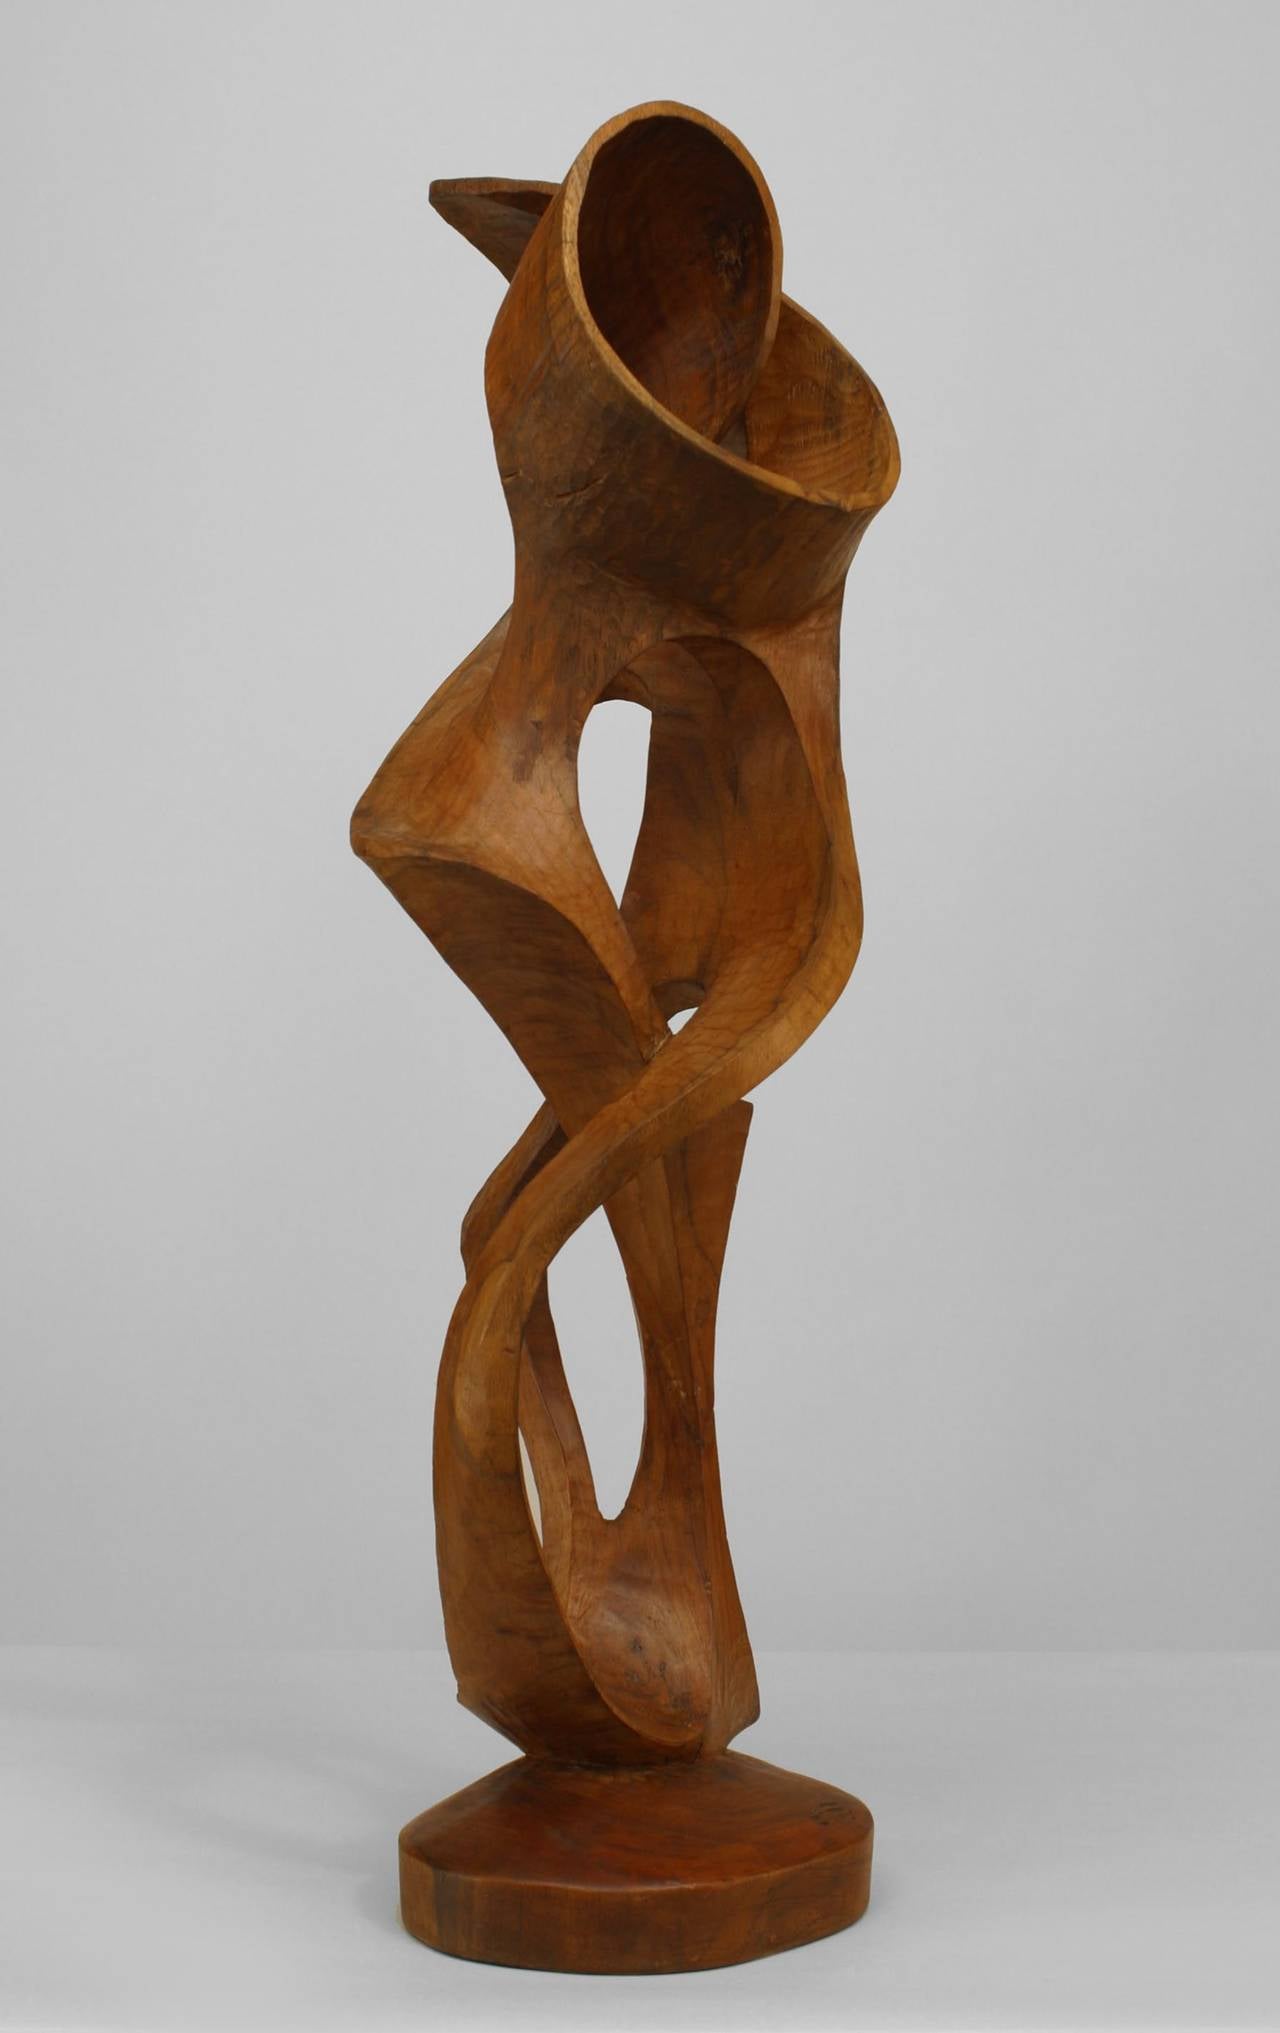 Sculpture abstraite contemporaine en érable (bois d'ambroisie) représentant une sculpture verticale de forme libre avec un design ouvert entouré de volutes émanant d'une base solide.
